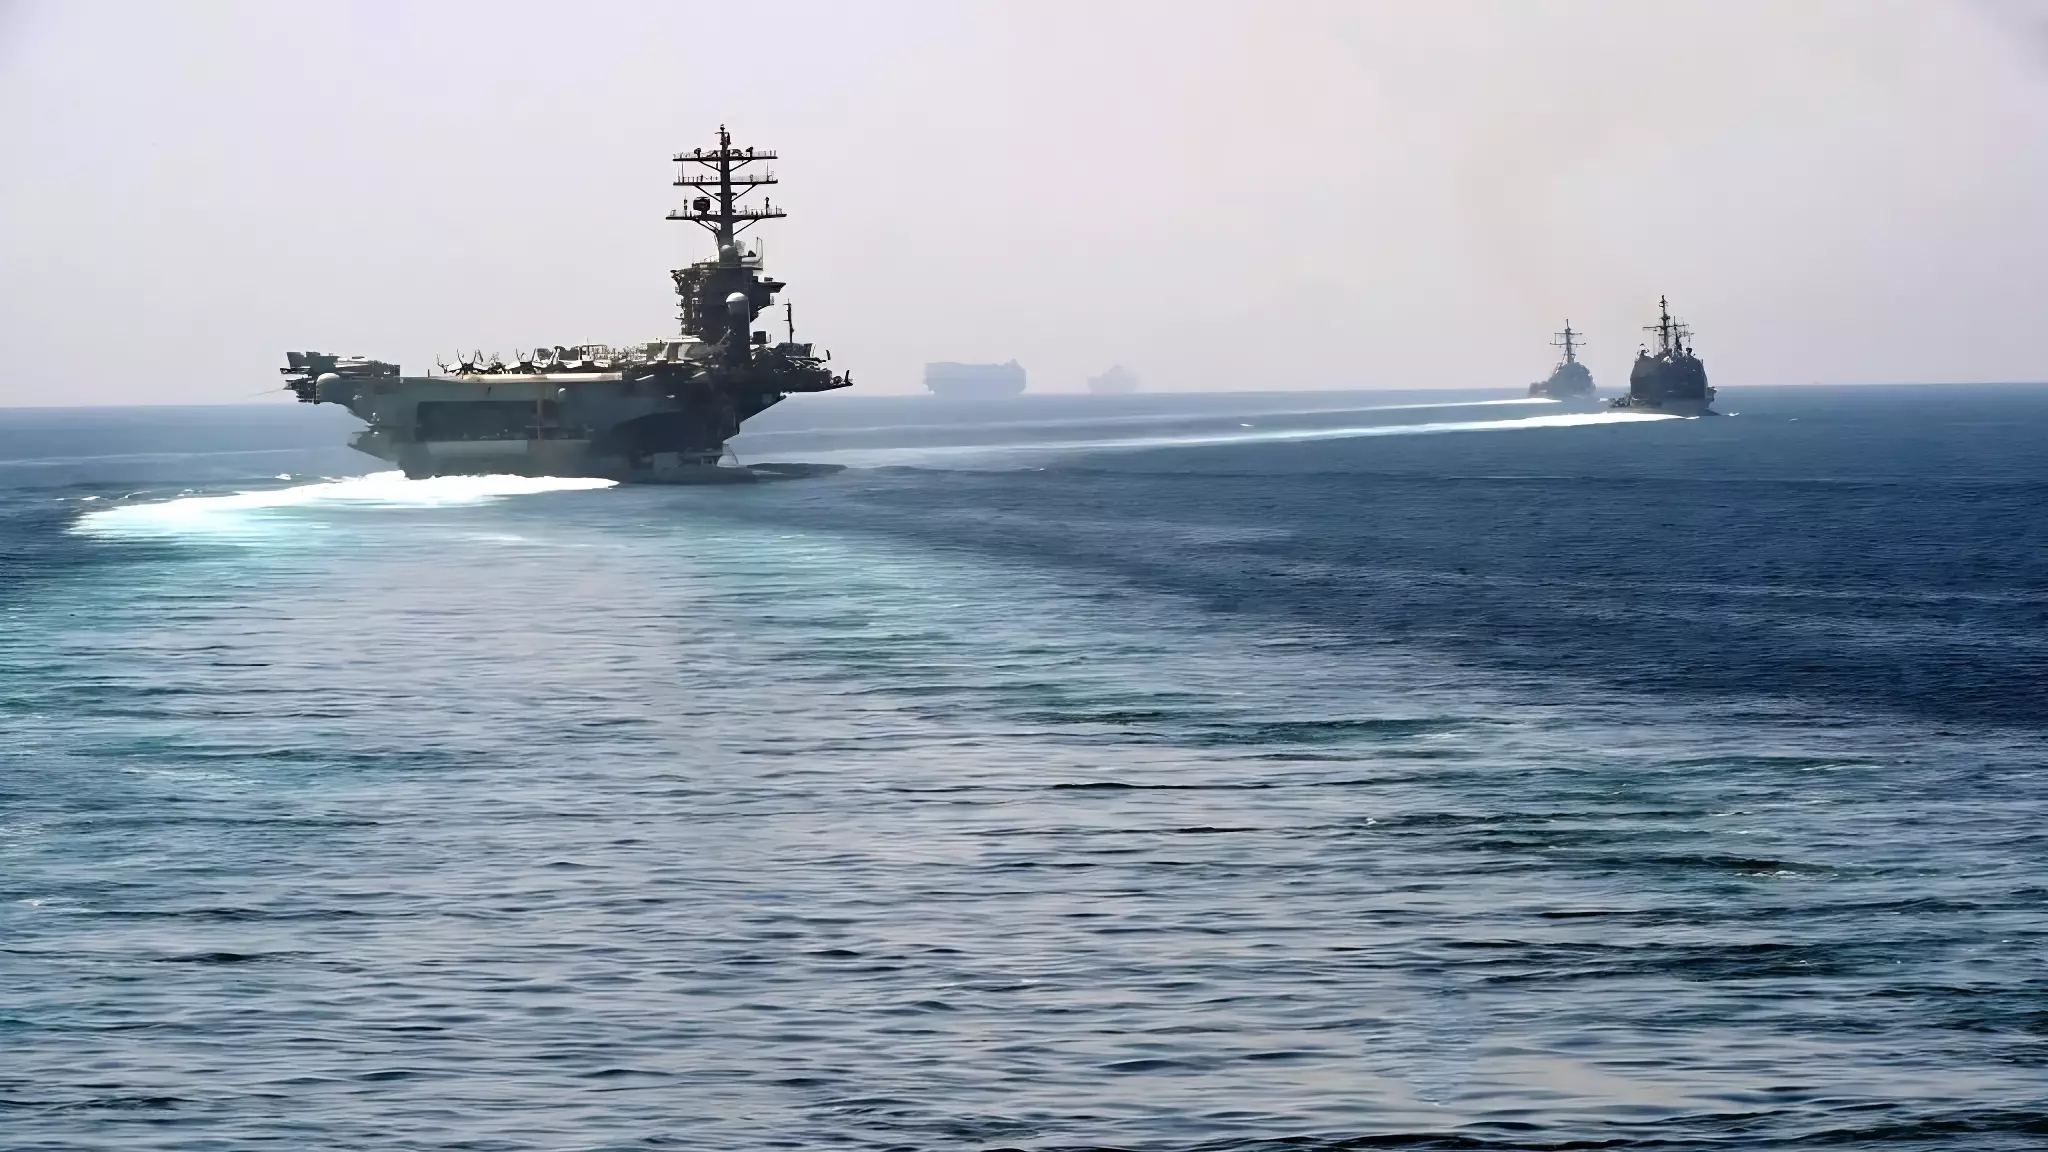 ВМС США наводят порядок к Красном мире